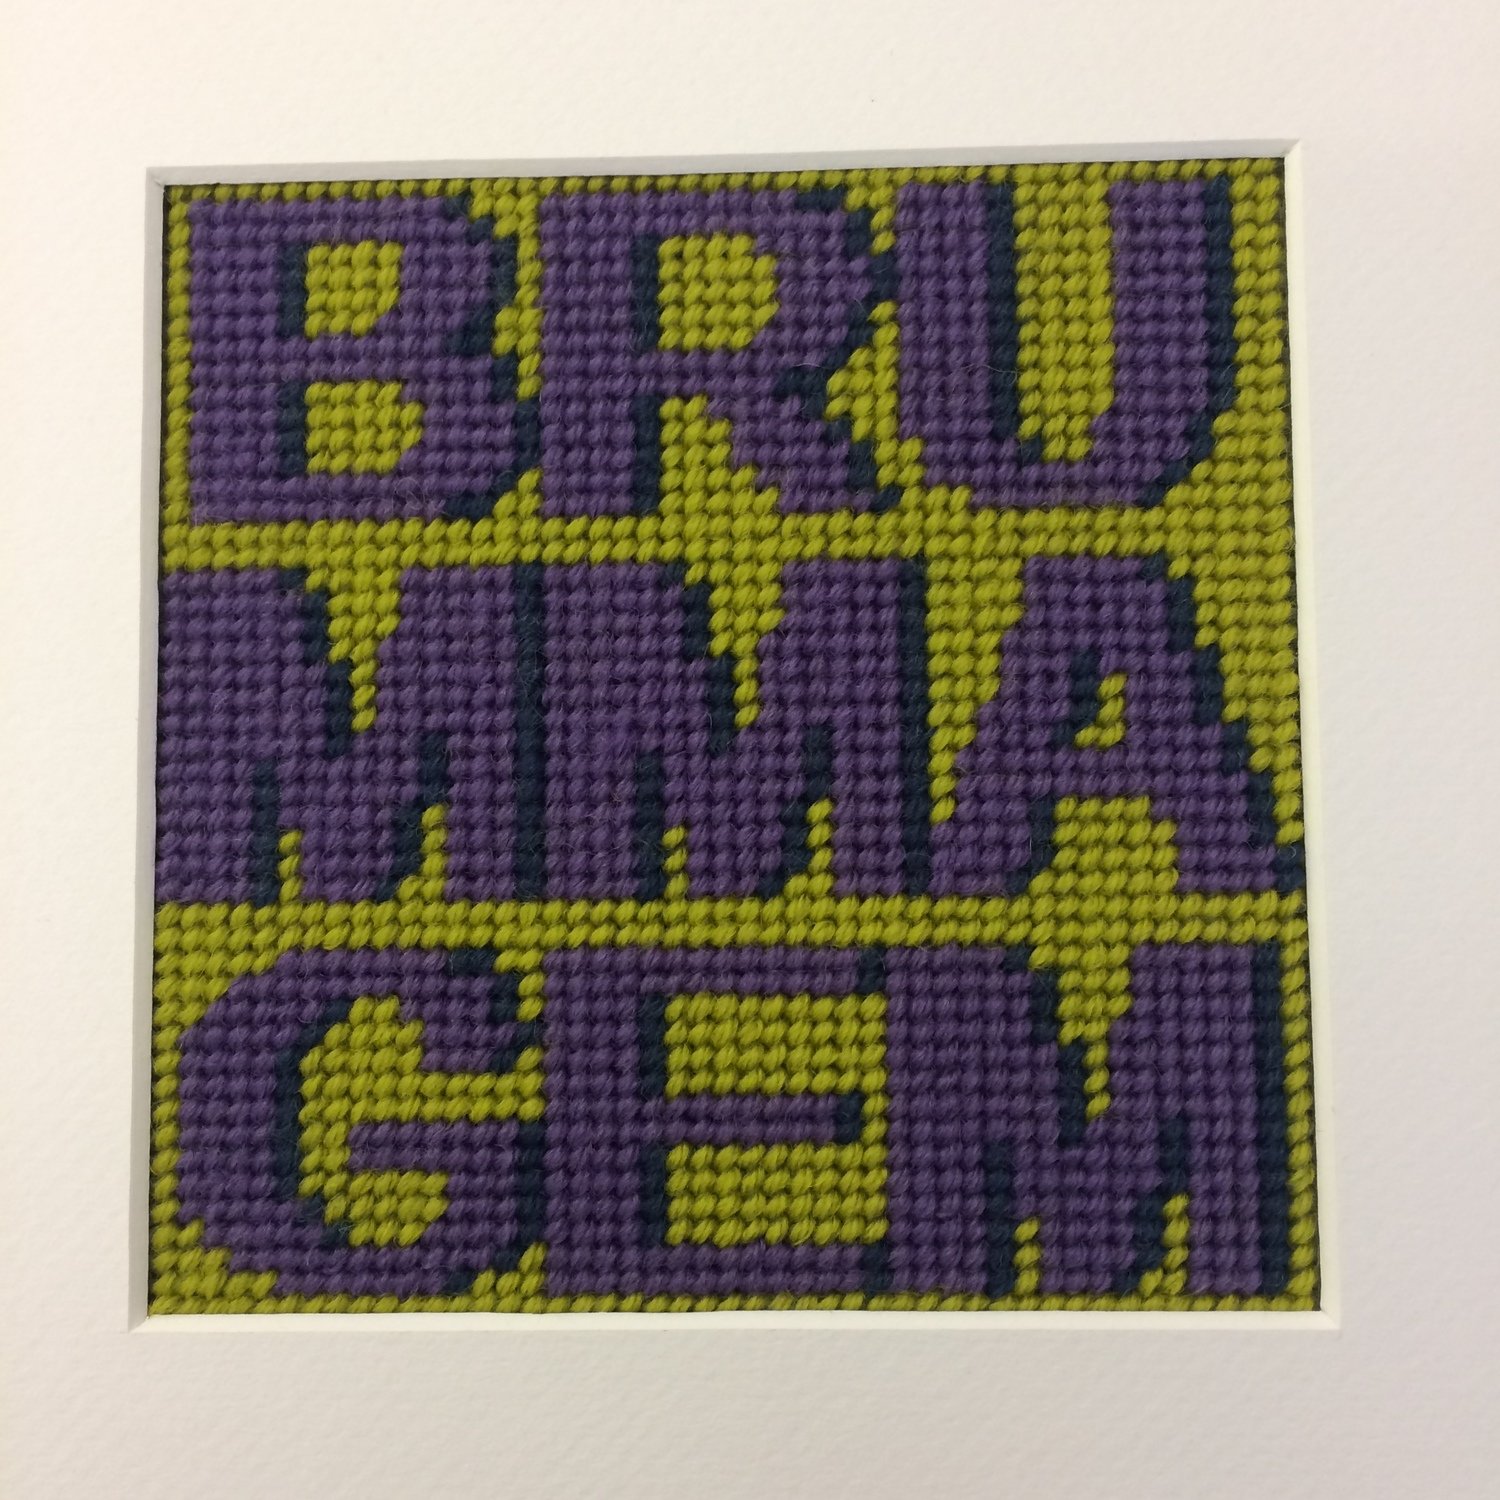 Words - Brummagem Tapestry kit